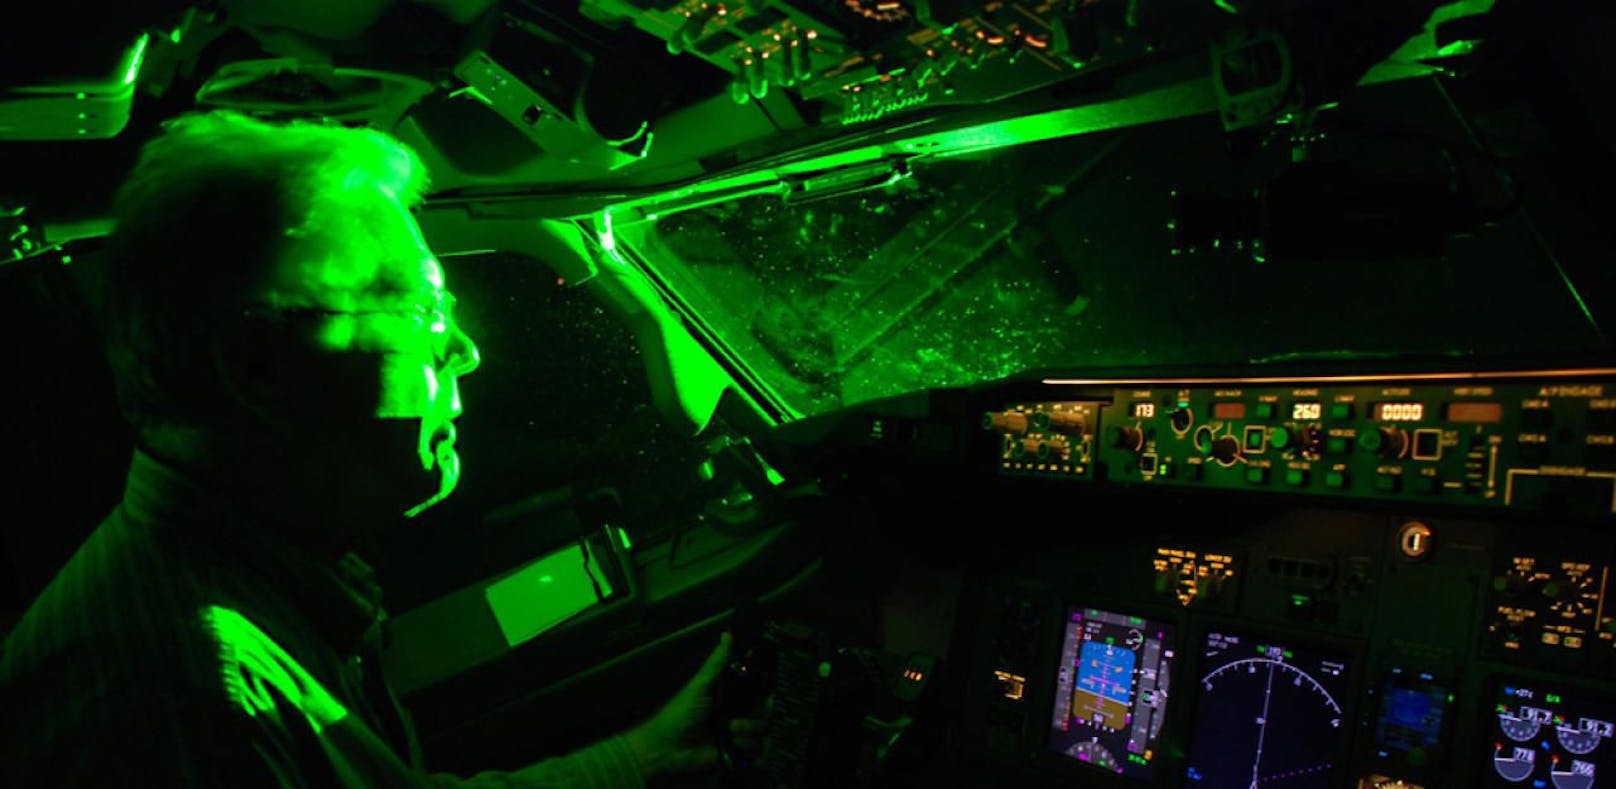 Laser-Attacke auf Piloten bei Anflug auf Wien